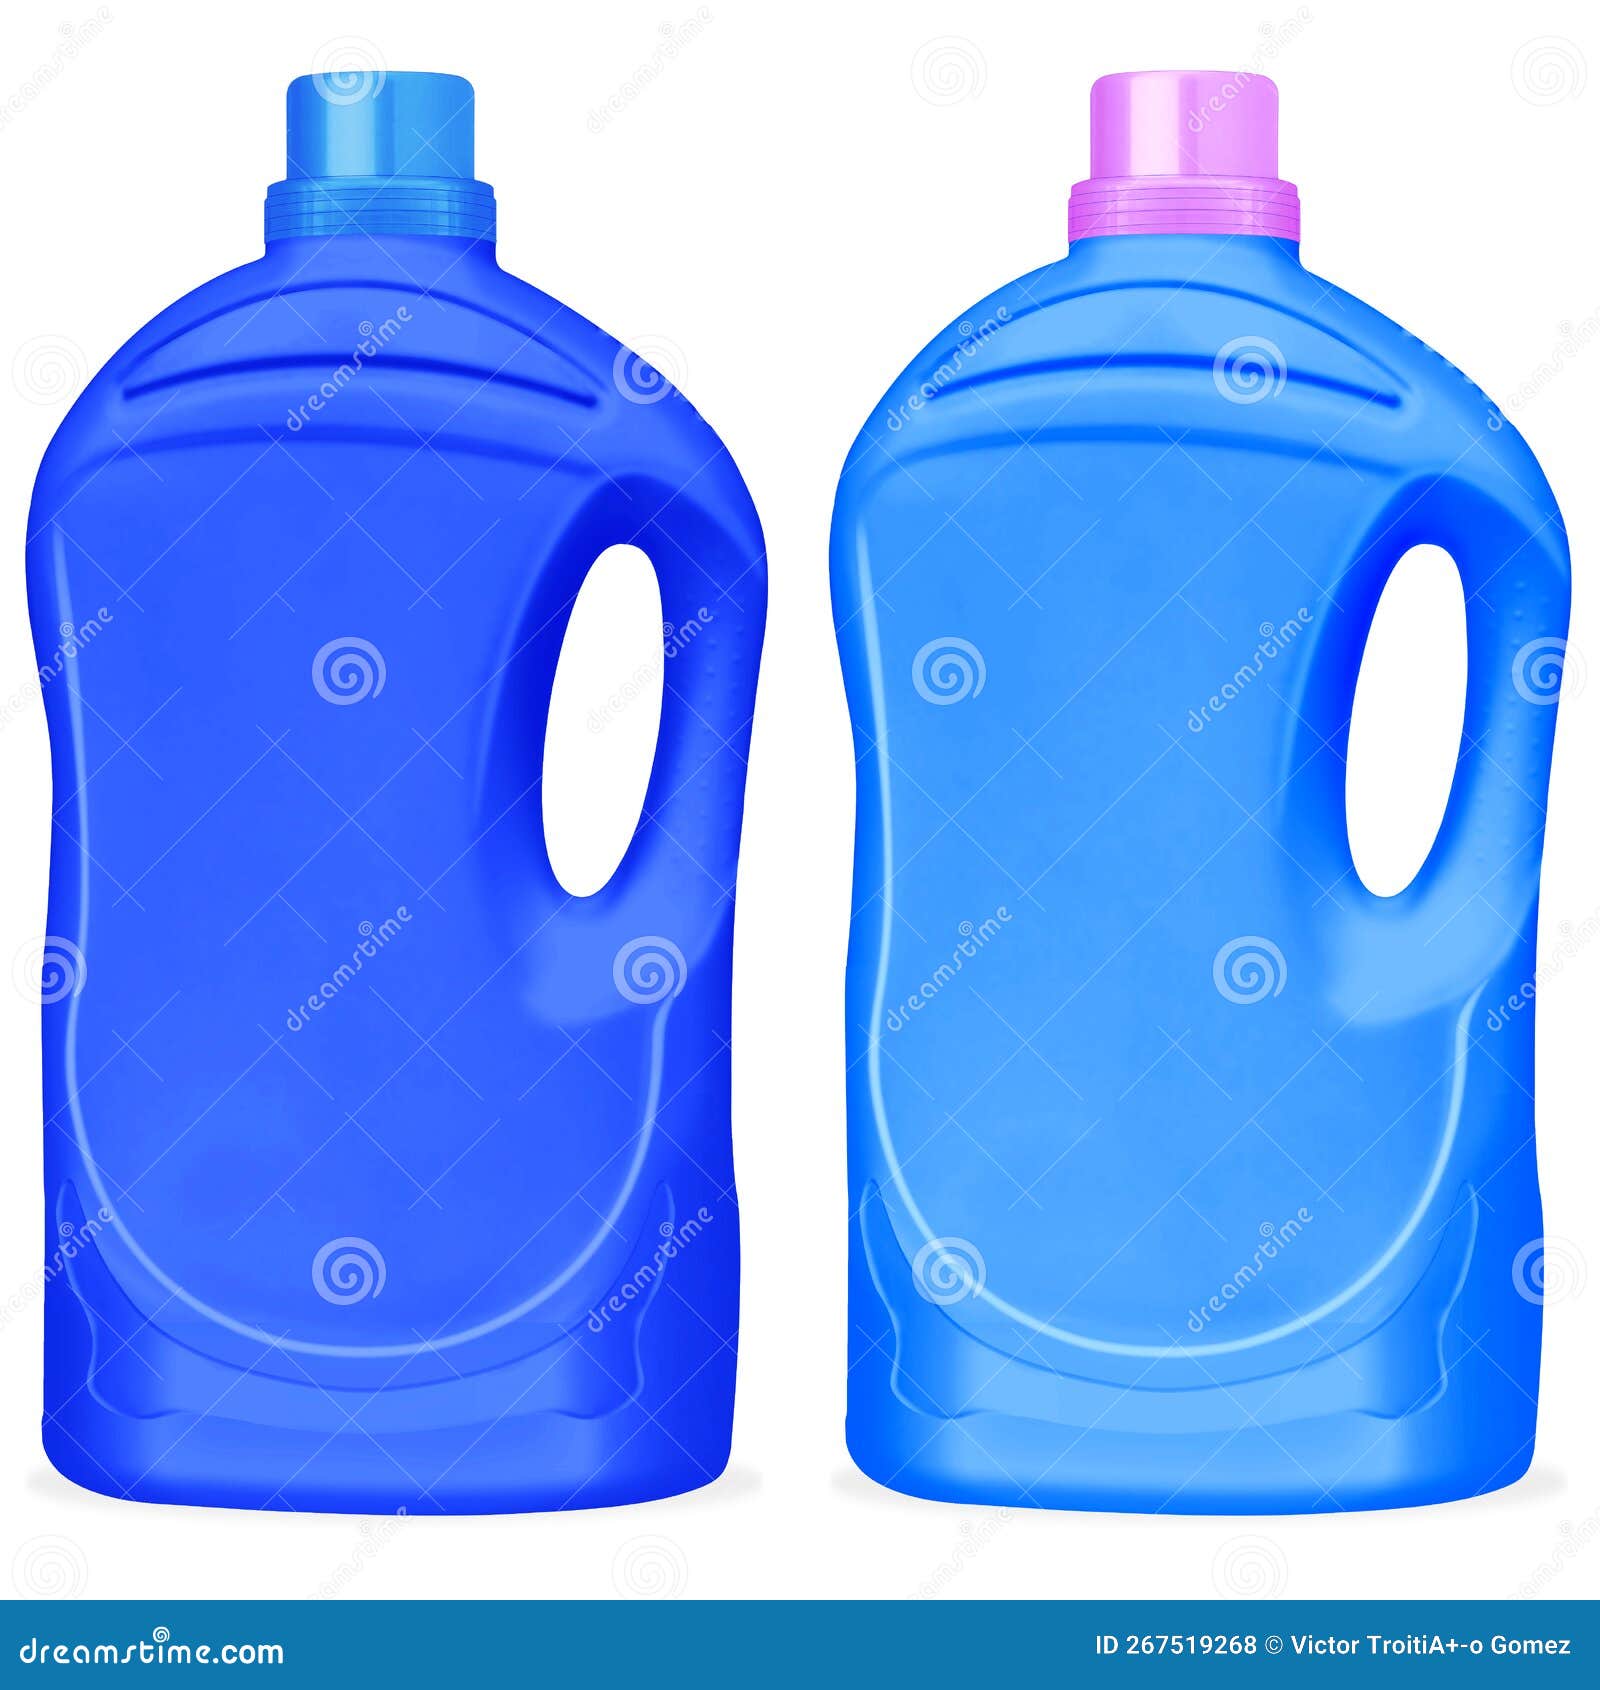 ilustraciÃ³n de botellas de plÃ¡stico para detergente de ropa.